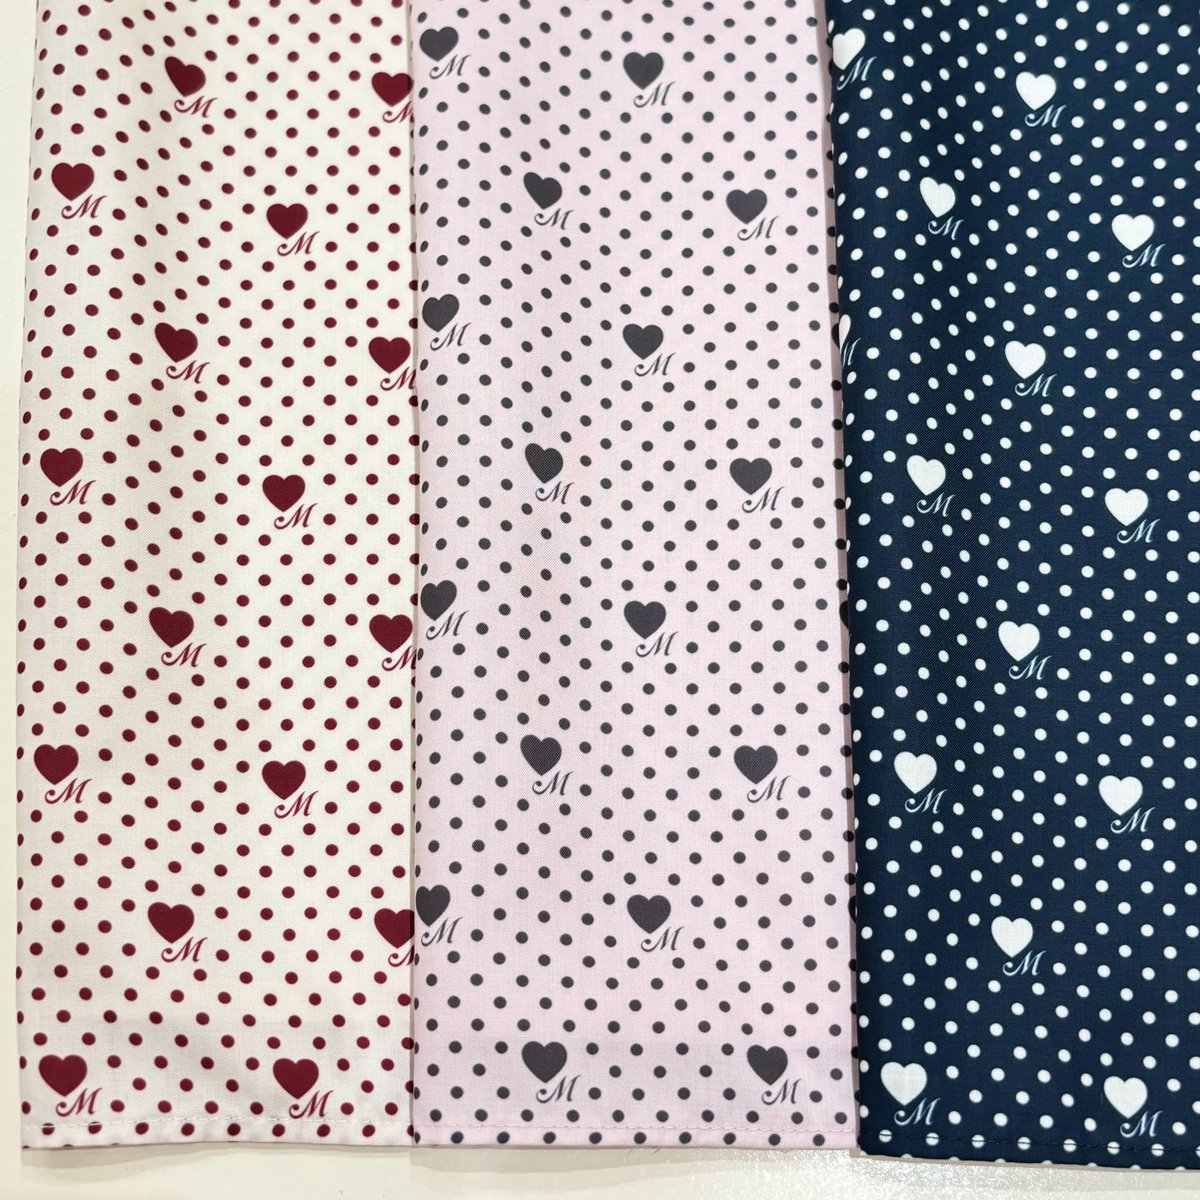 【青木美沙子様×Melody  BasKet】

Little dot heartジャンパースカート
color：ネイビー
M size：¥34,100(税込)
Plus size：¥36,300(税込)

すぐにお持ち帰り頂けます✨
お取り置き、店舗通販も可能です🎀